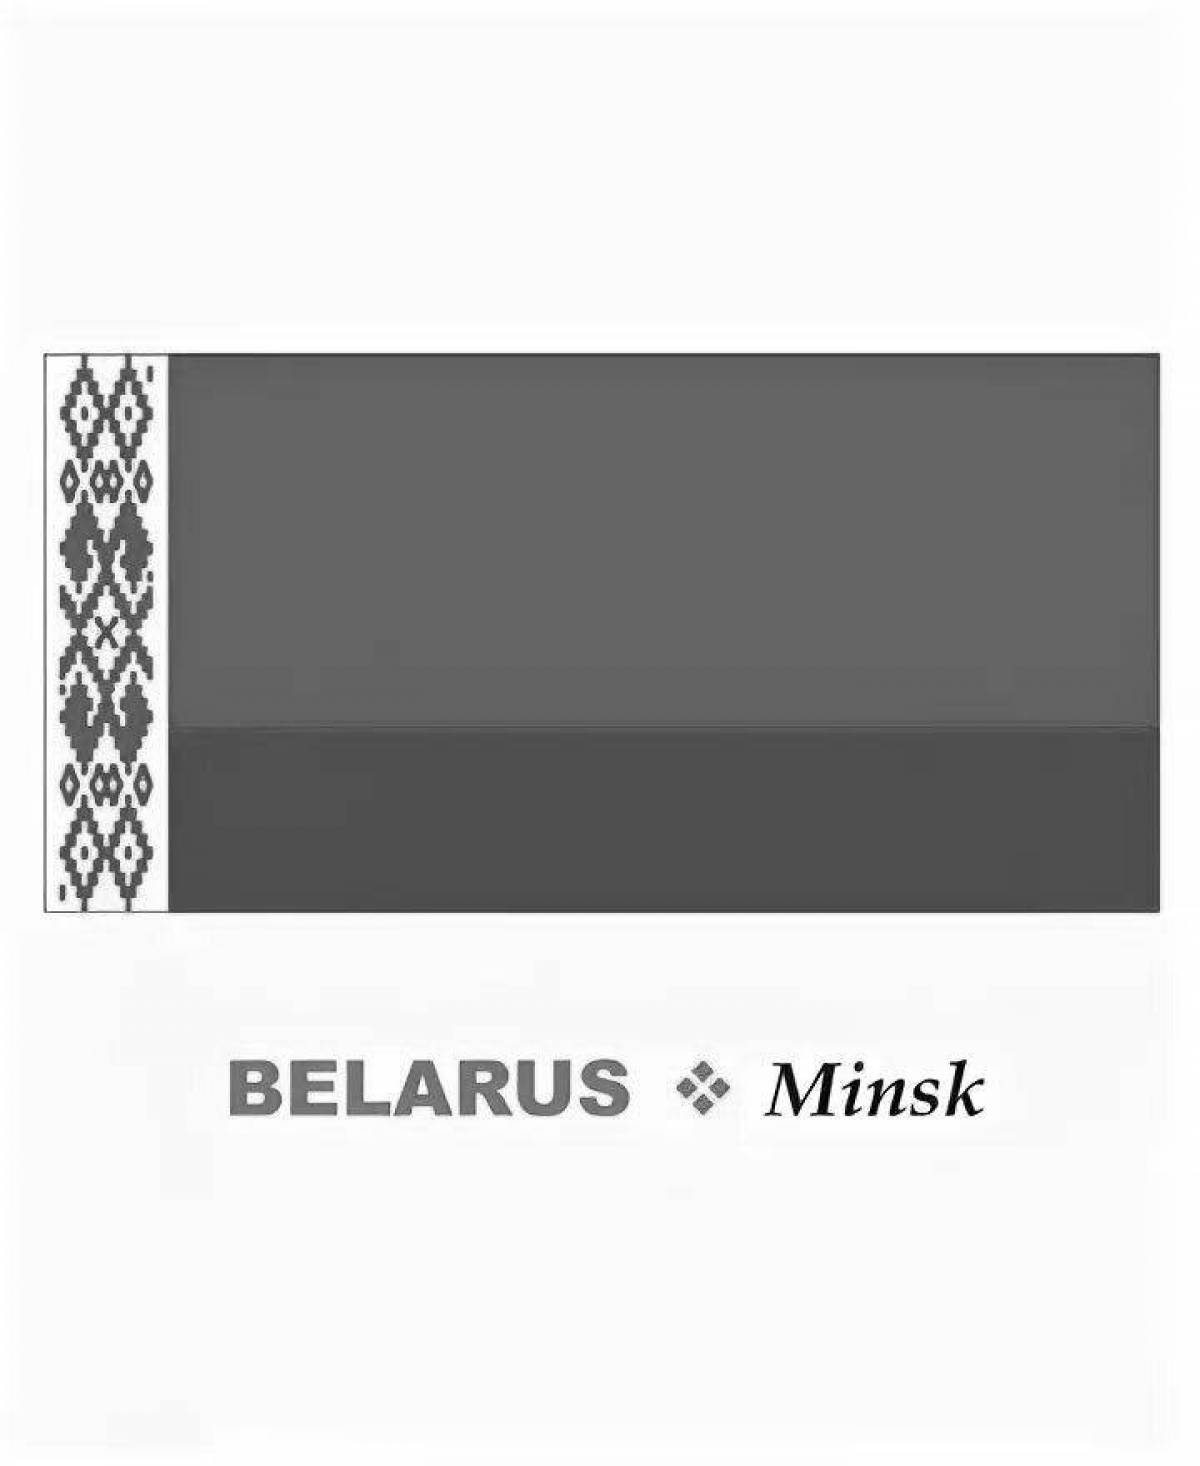 Raised flag of belarus